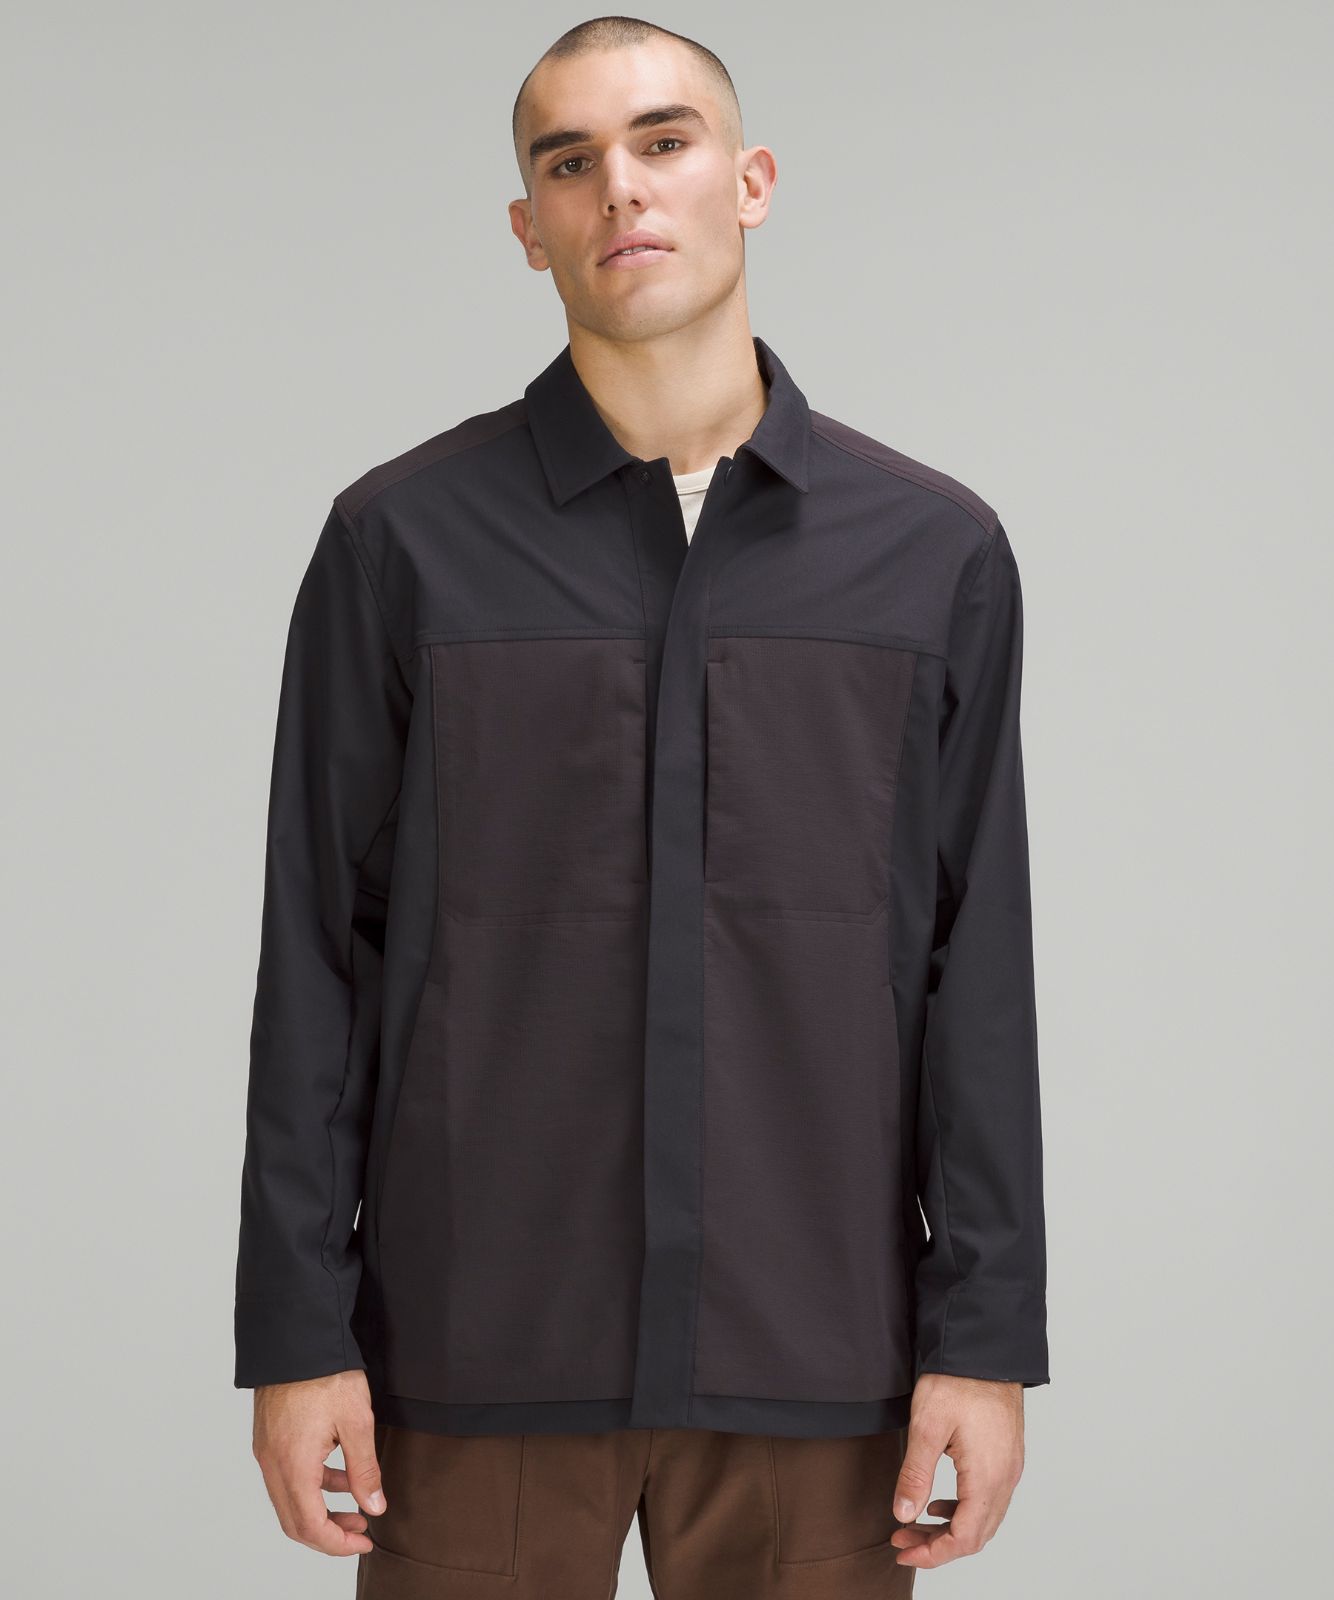 Snap-Front Collared Jacket | Coats and Jackets | Lululemon UK